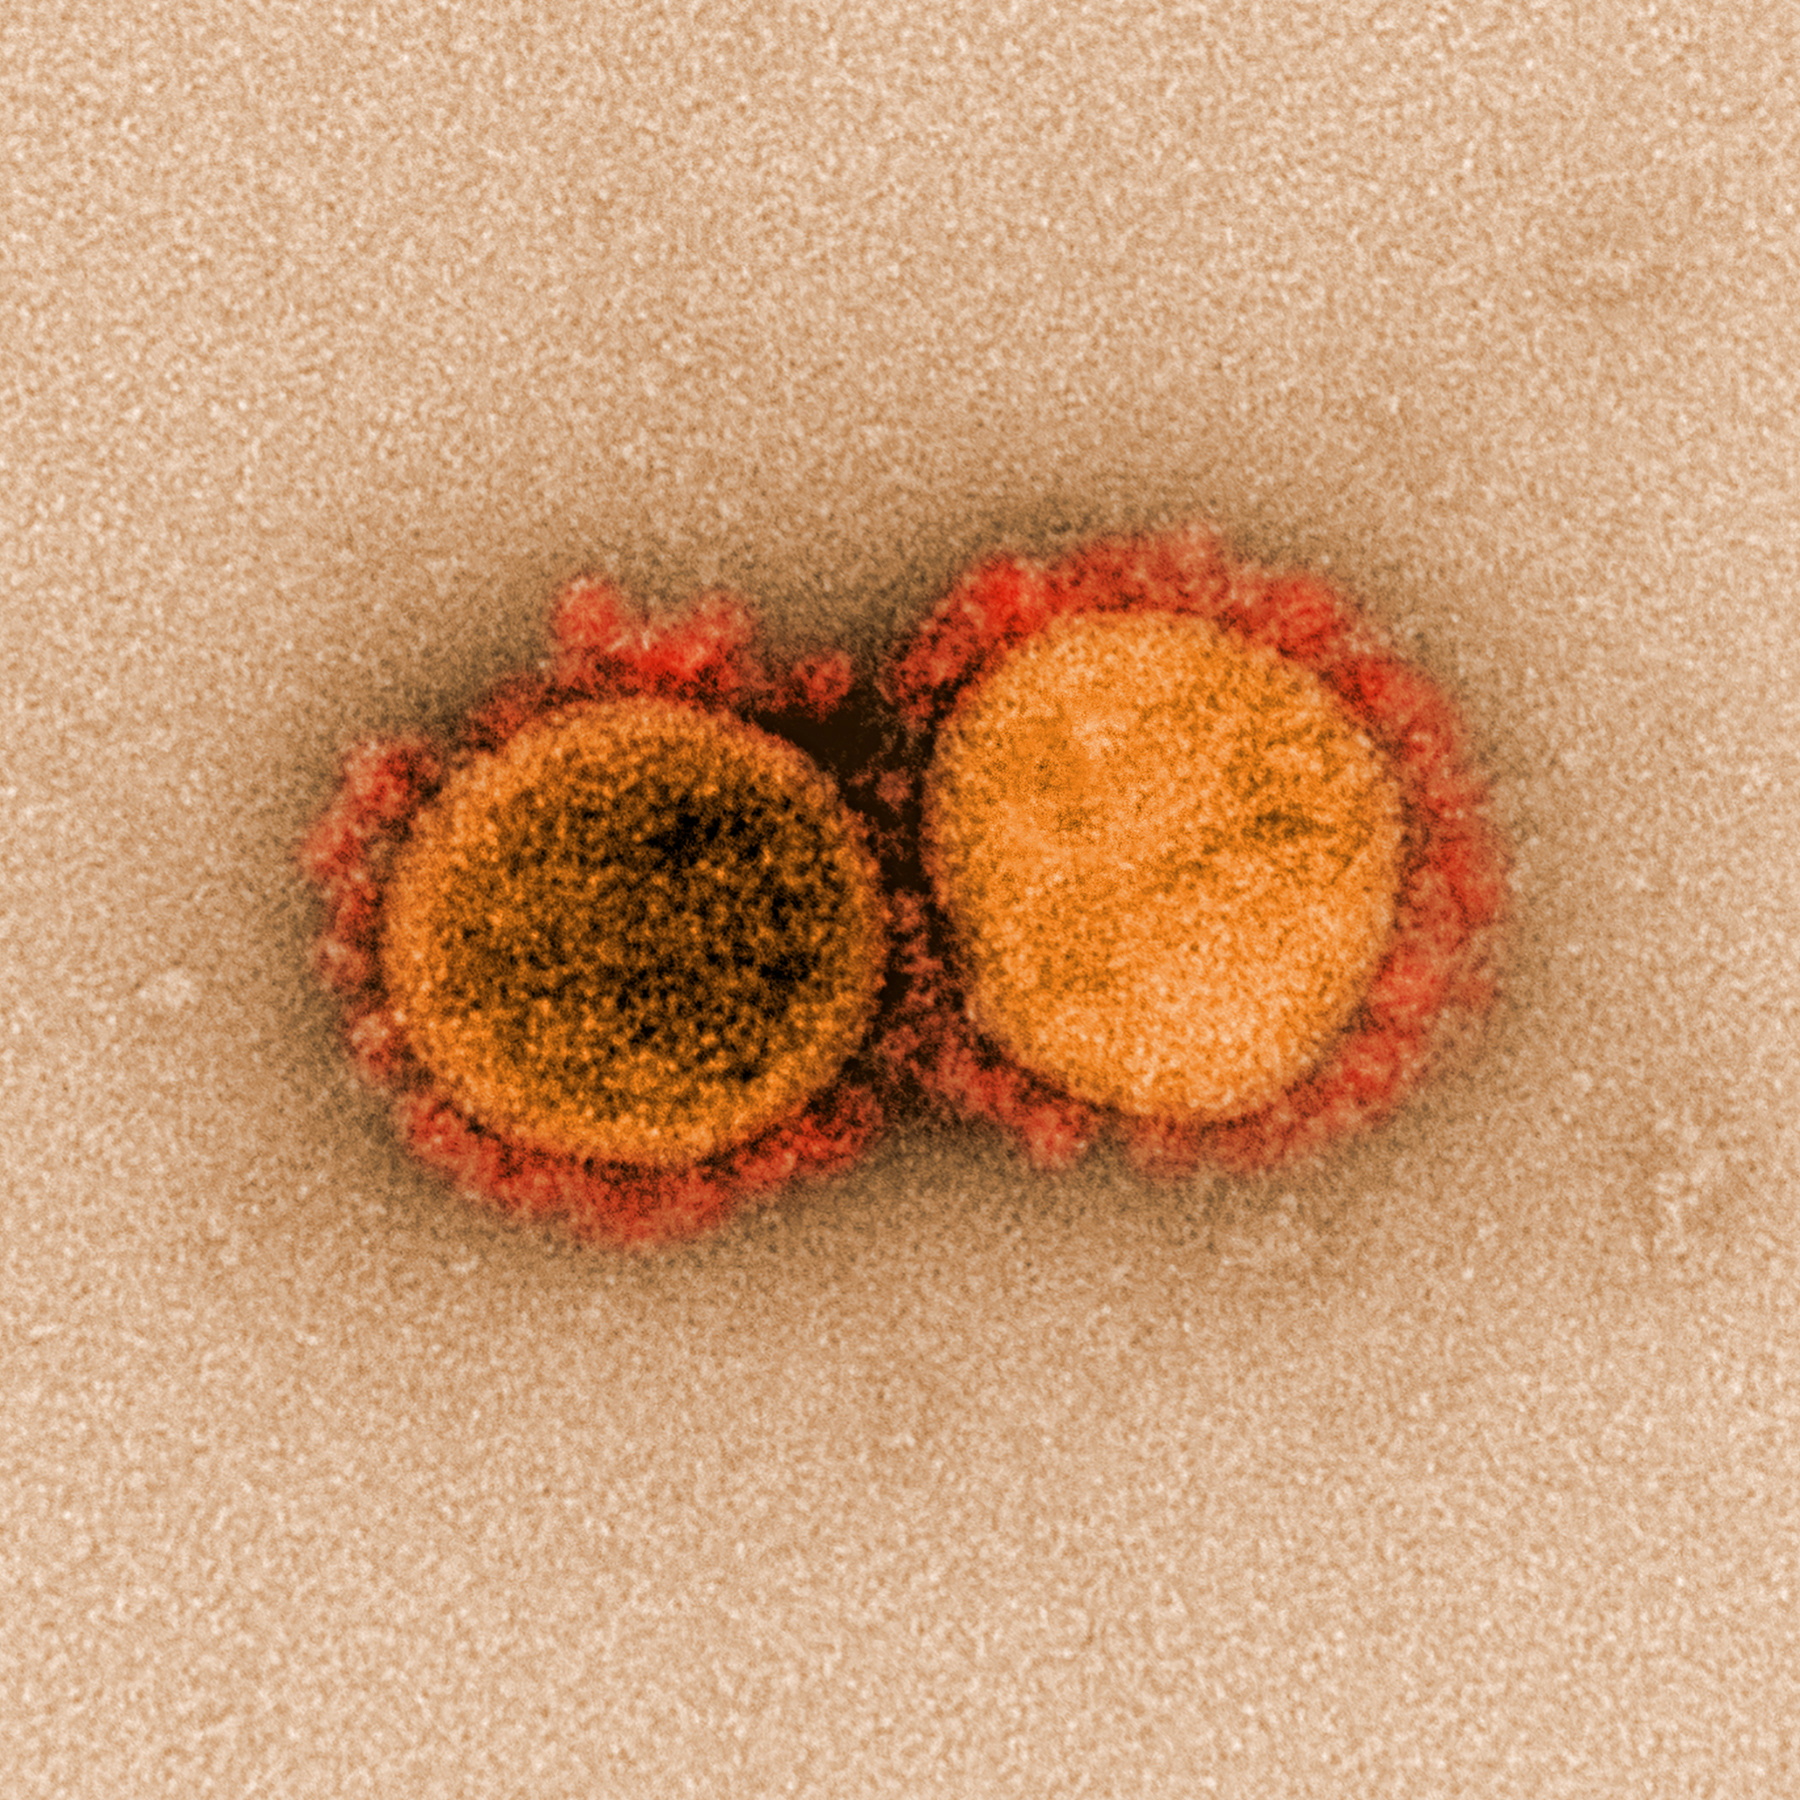 Afin de déterminer le potentiel de la nouvelle protéine virale, les experts ont fabriqué un virus chimérique / NIAID Integrated Research Facility (IRF)/Handout via REUTERS